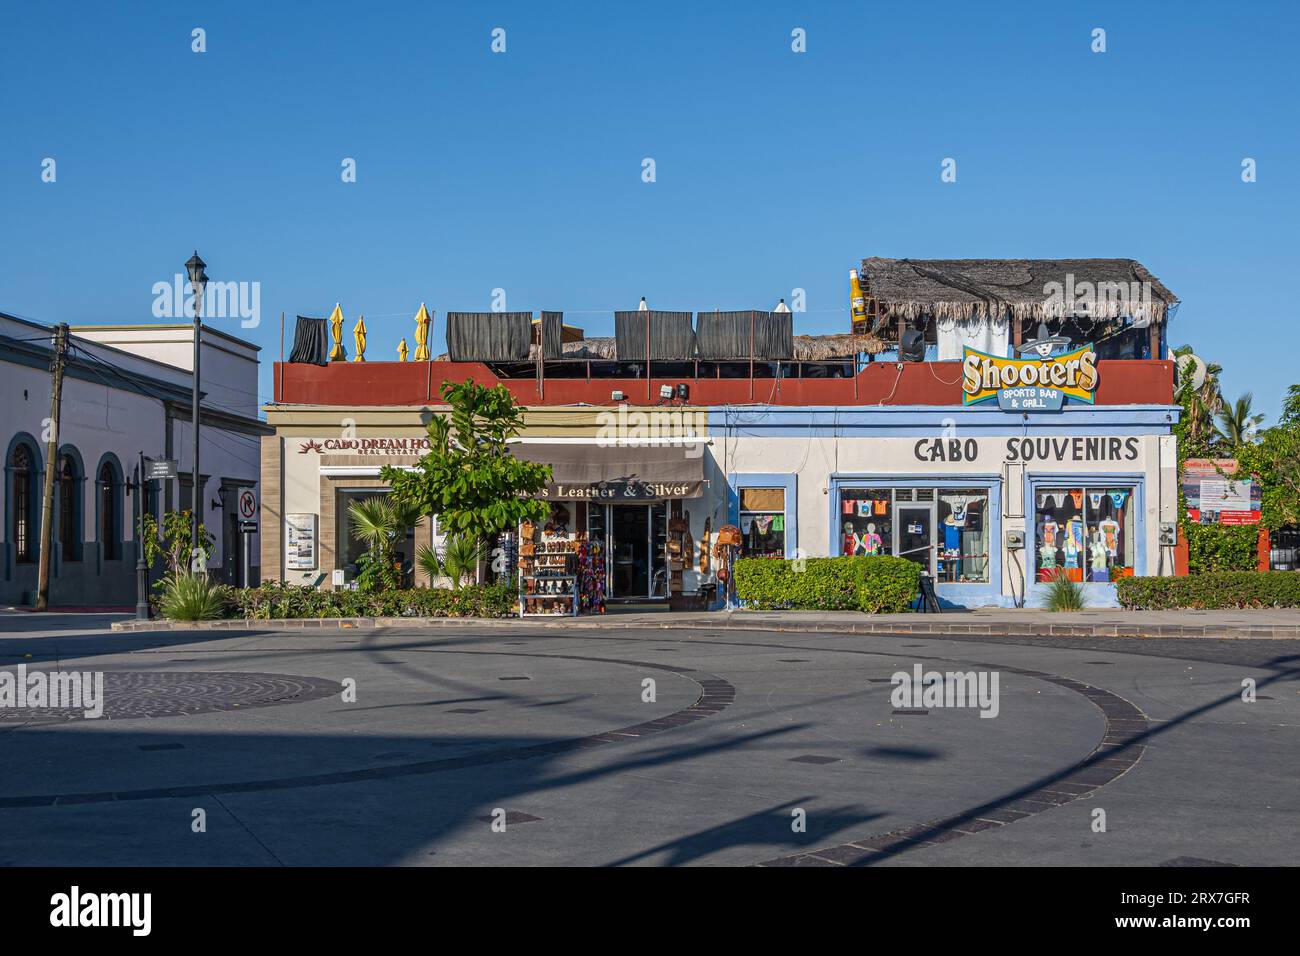 San Jose del Cabo Centro, Mexique - 16 juillet 2023 : façades commerciales sur Blvd. Antonio Mijares près de la place centrale sous le ciel bleu. Immobilier, bar, cuir Banque D'Images